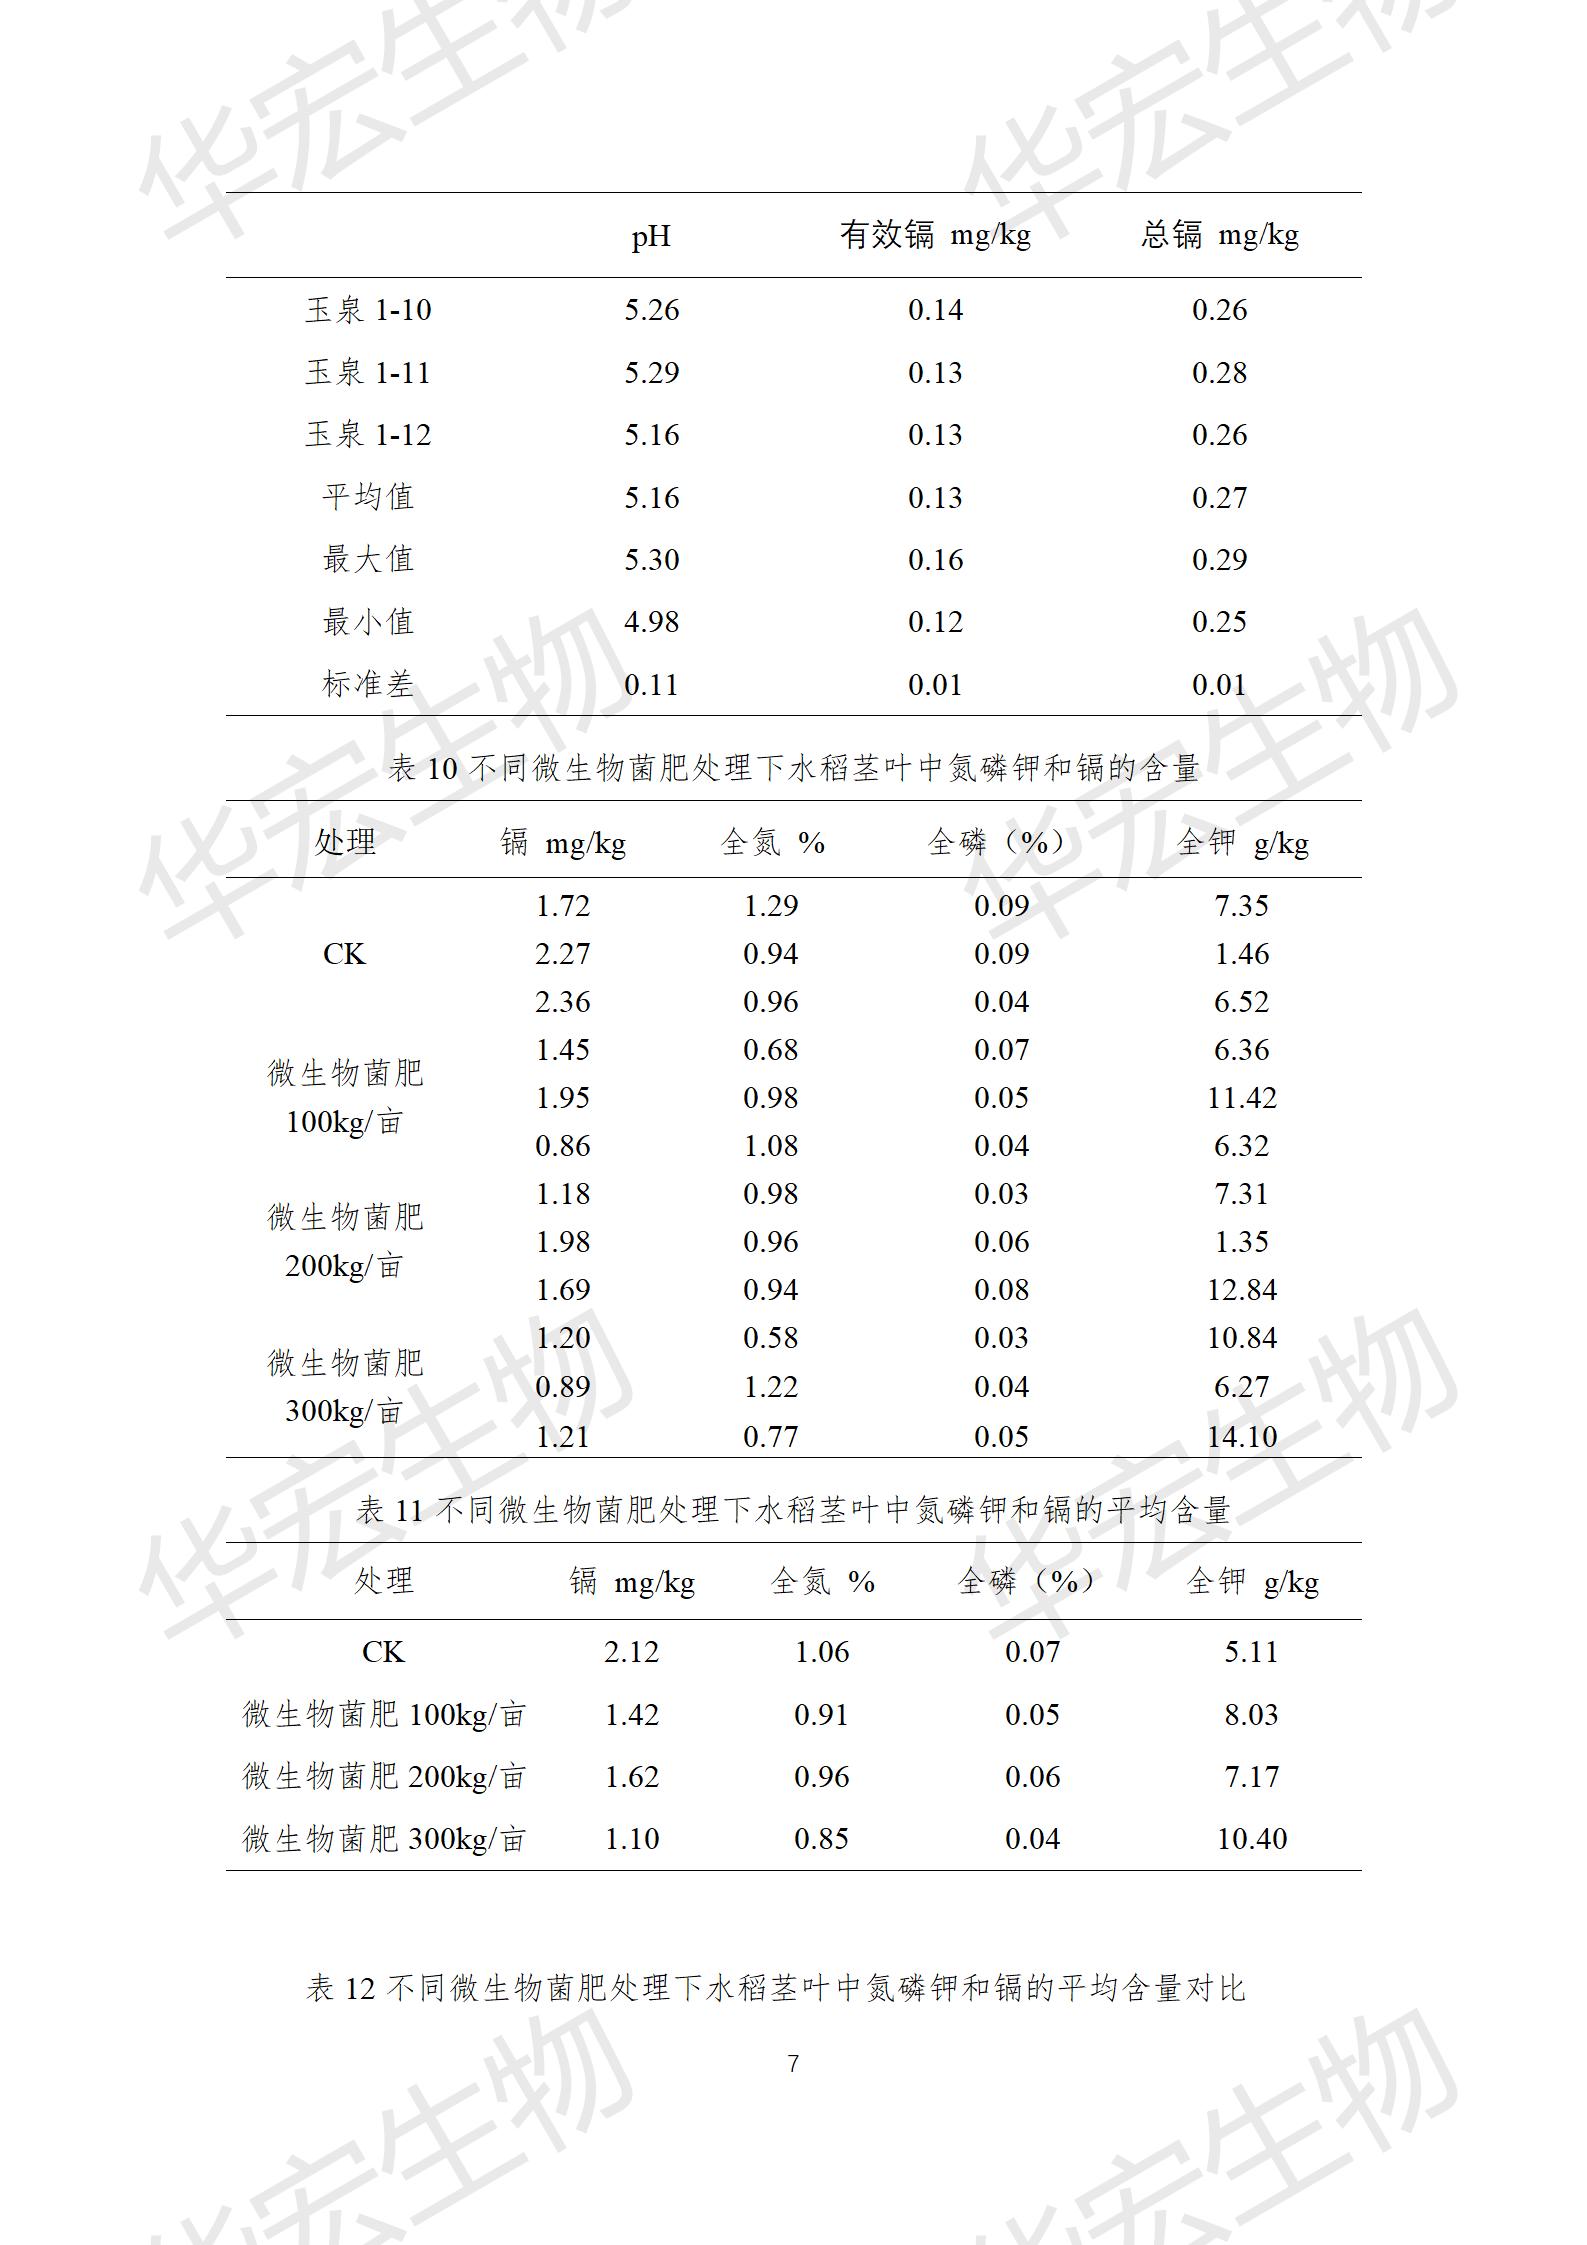 四川農科院上官宇先2021年重金屬污染實驗報告20220615_07.jpg